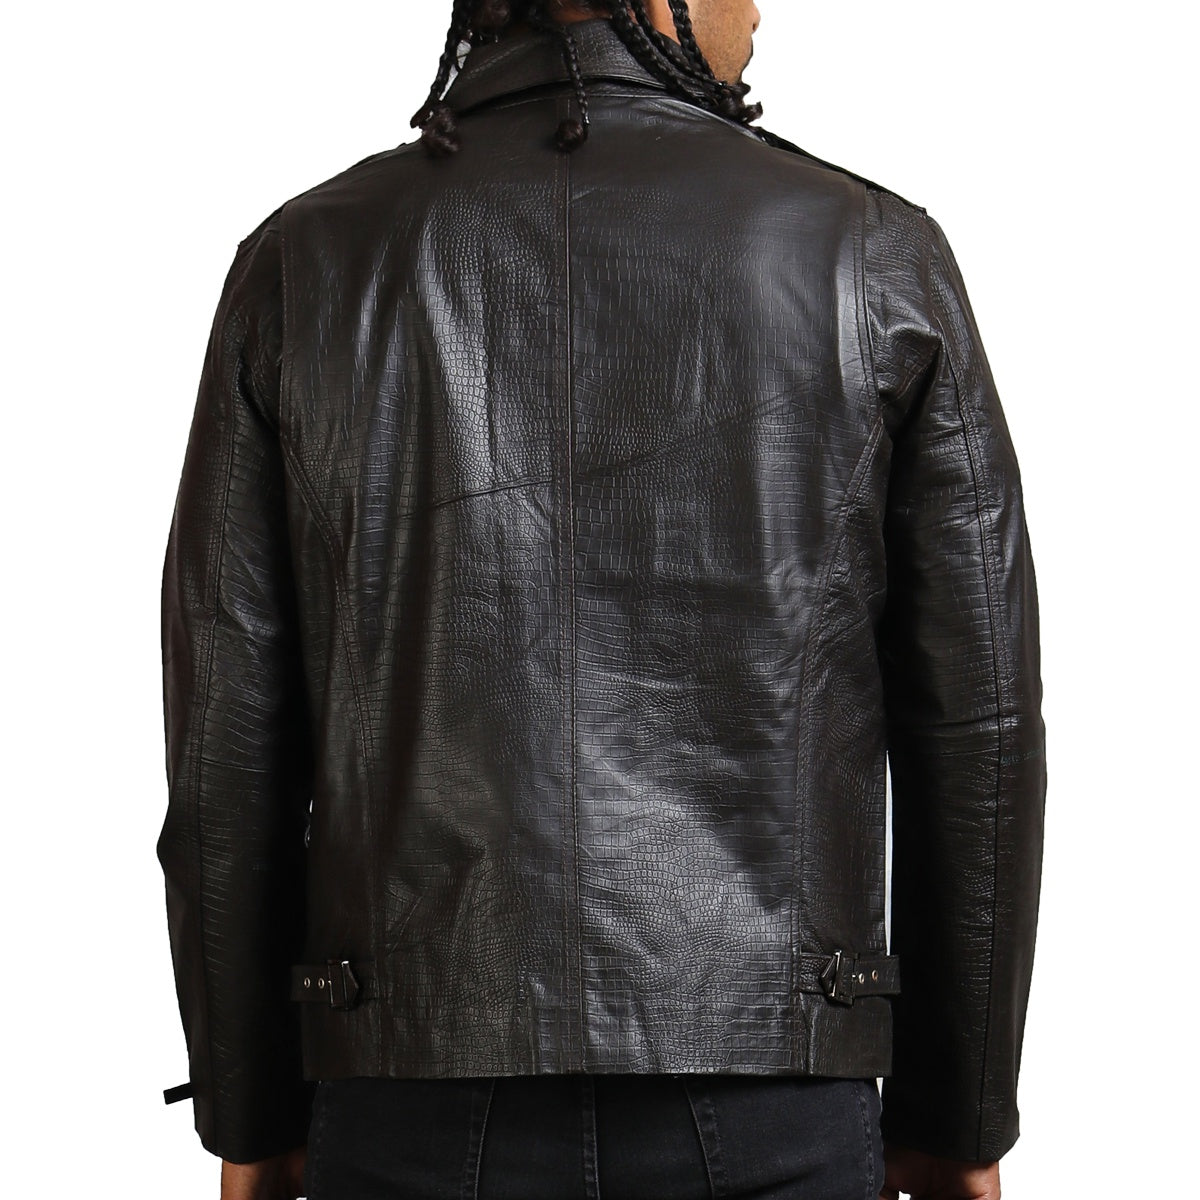 Textured Black Genuine Leather Jacket